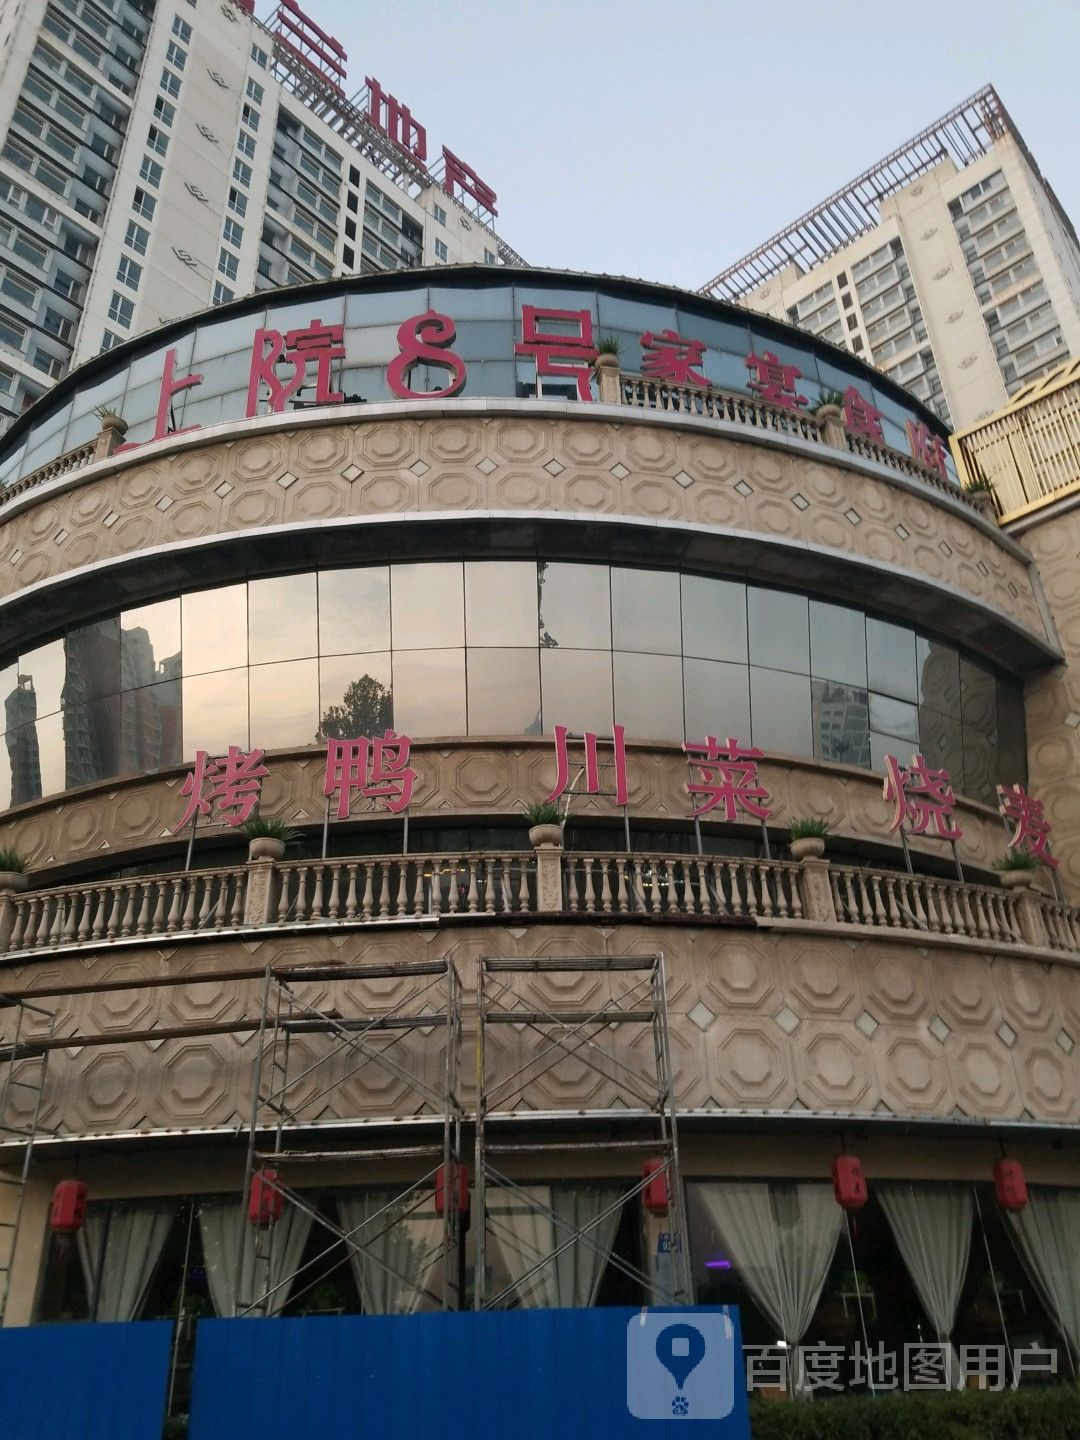 8km竞秀区 康欣园 经济型 公寓式酒店酒店 10